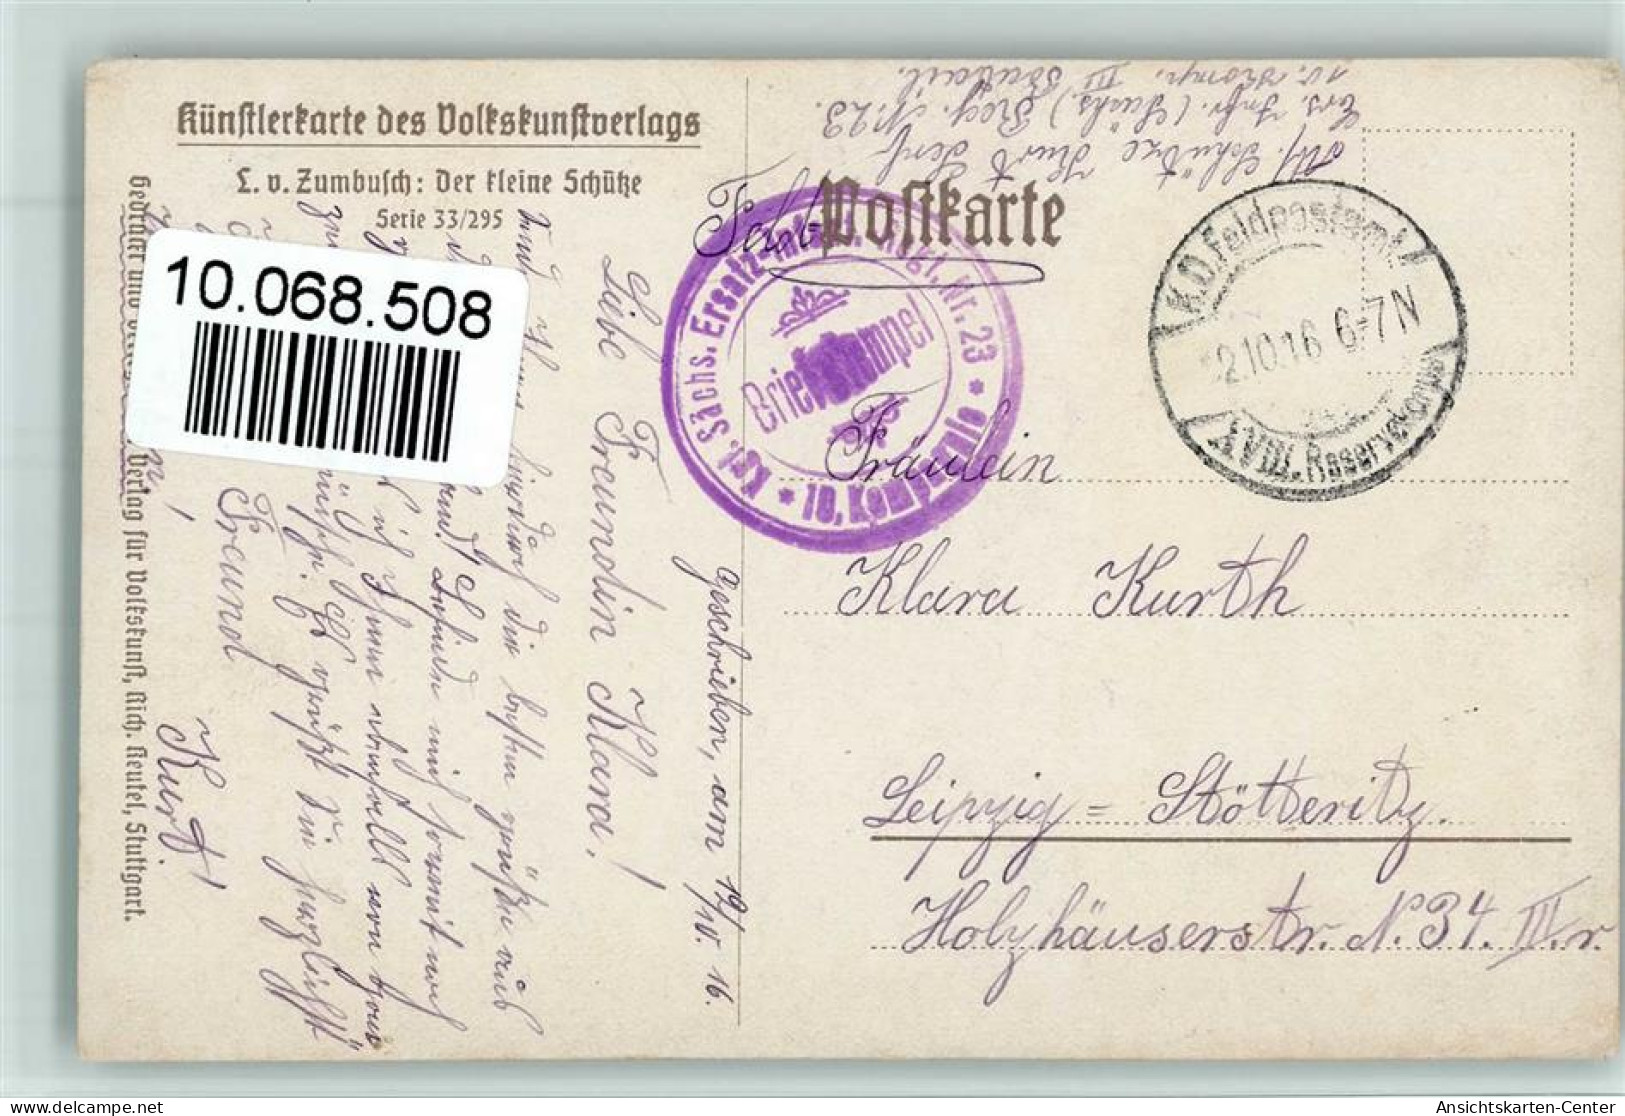 10068508 - Zumbusch Volkskunstverlag - Der Kleine - Zumbusch, Ludwig V.